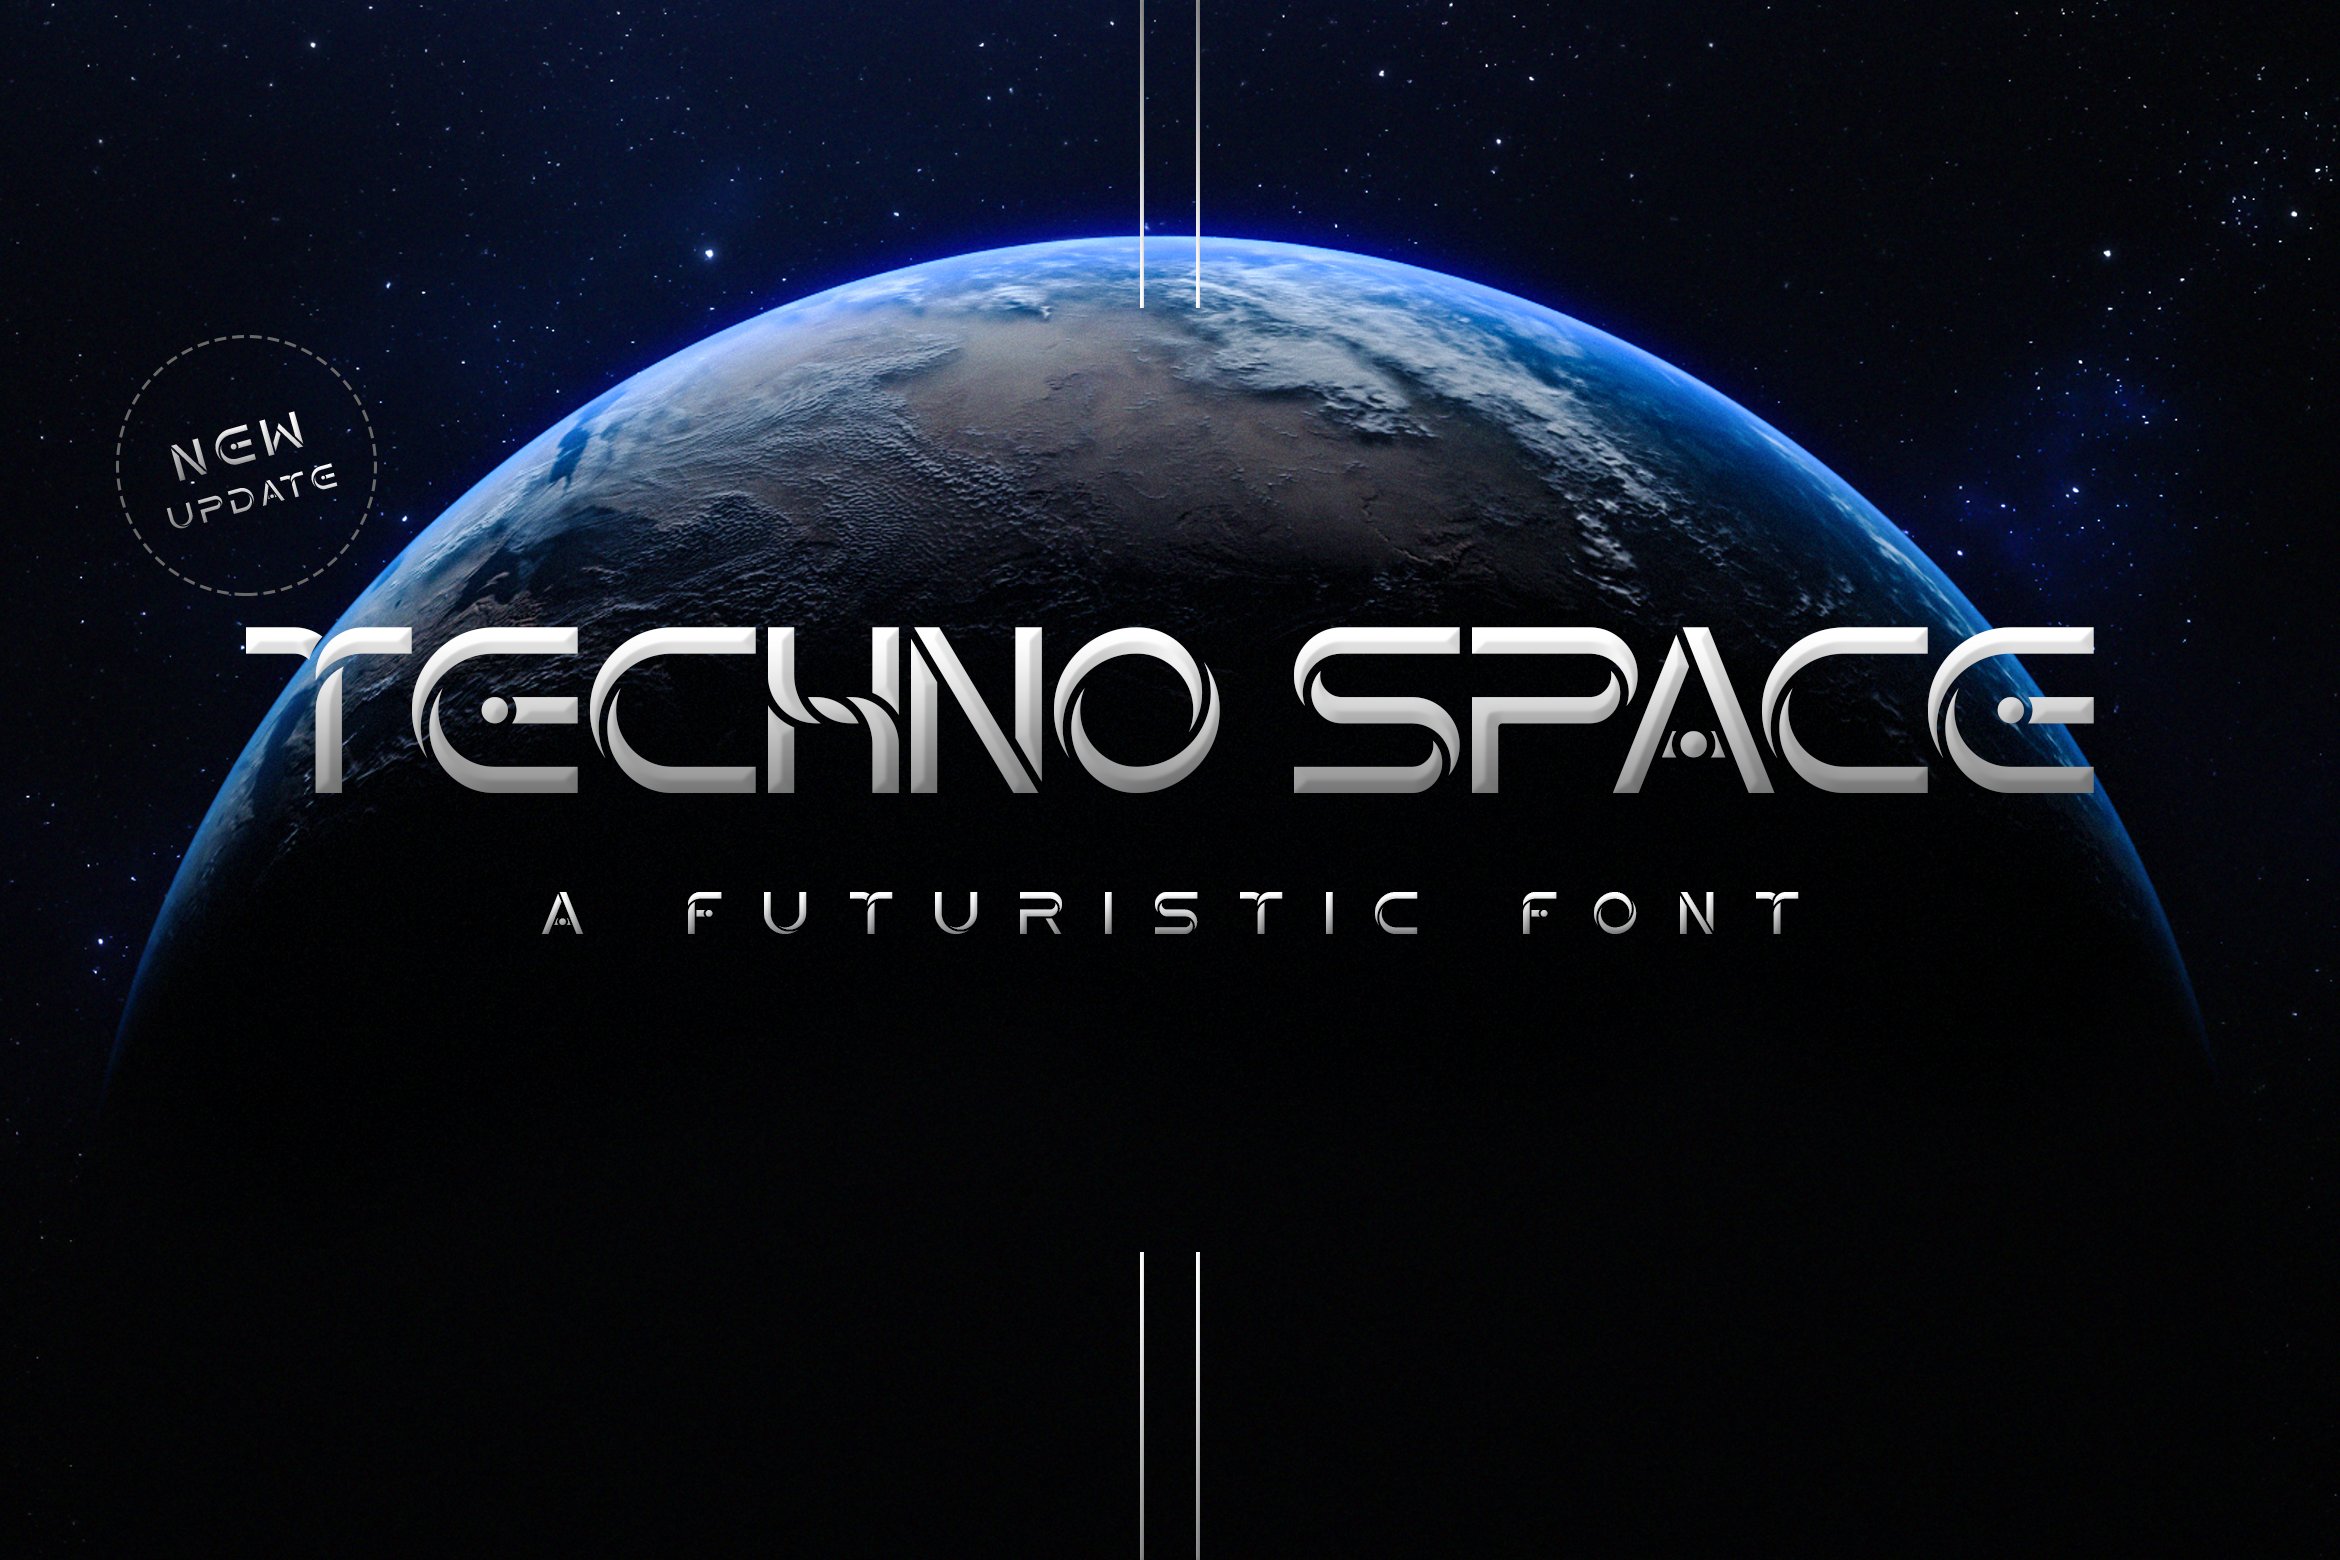 Techno Space Futuristic Font cover image.